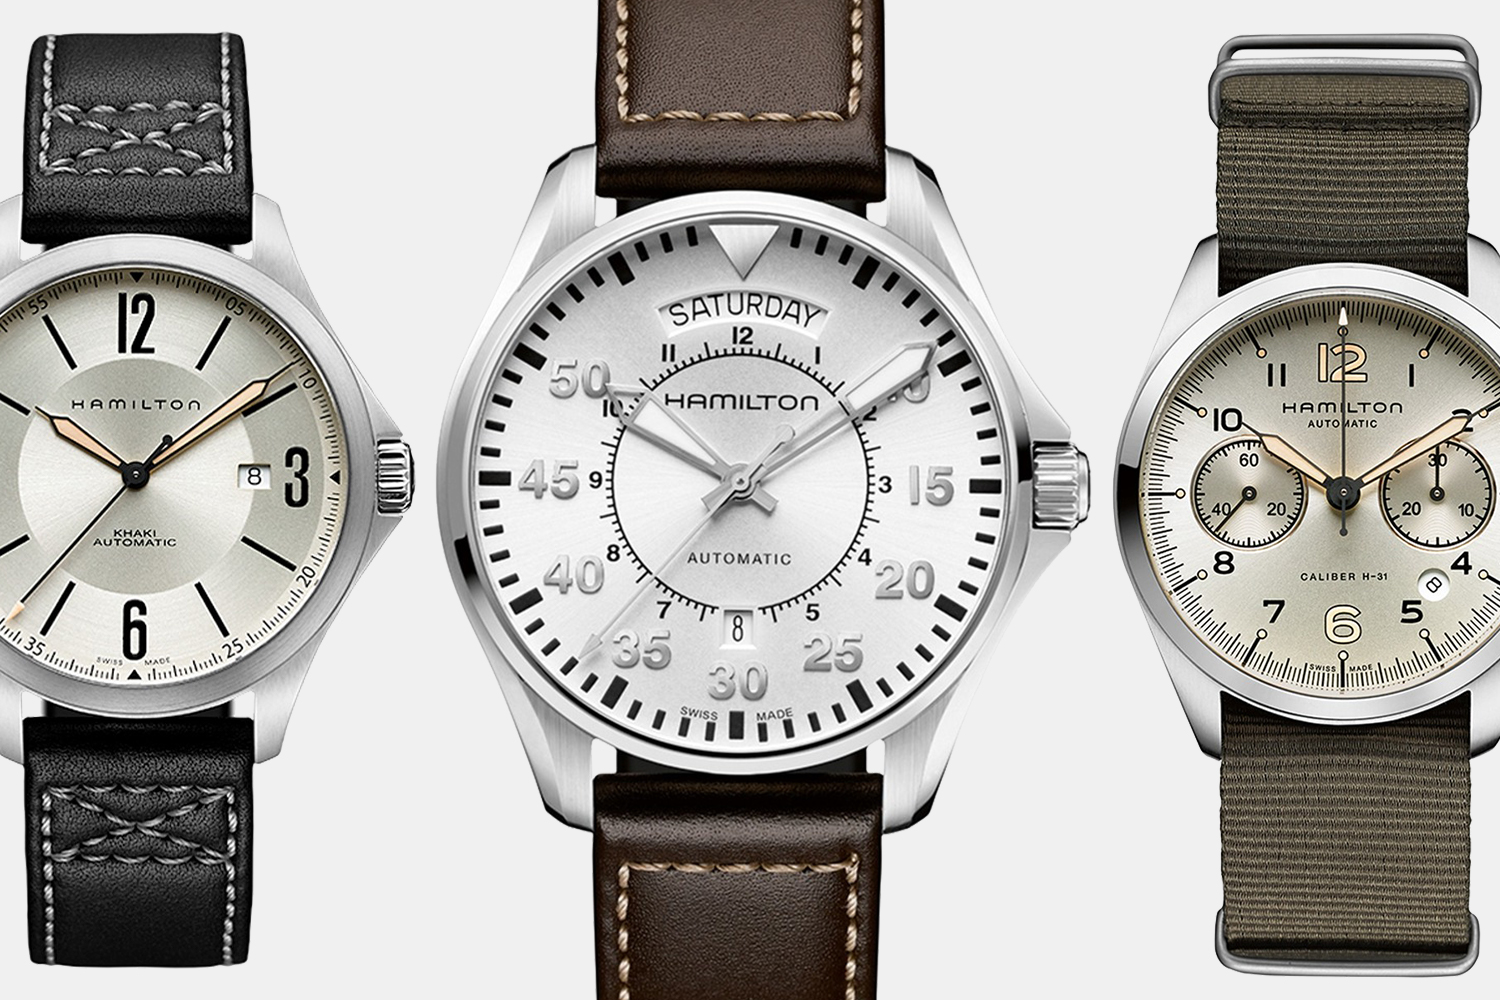 Men's Hamilton Khaki Watches on Sale